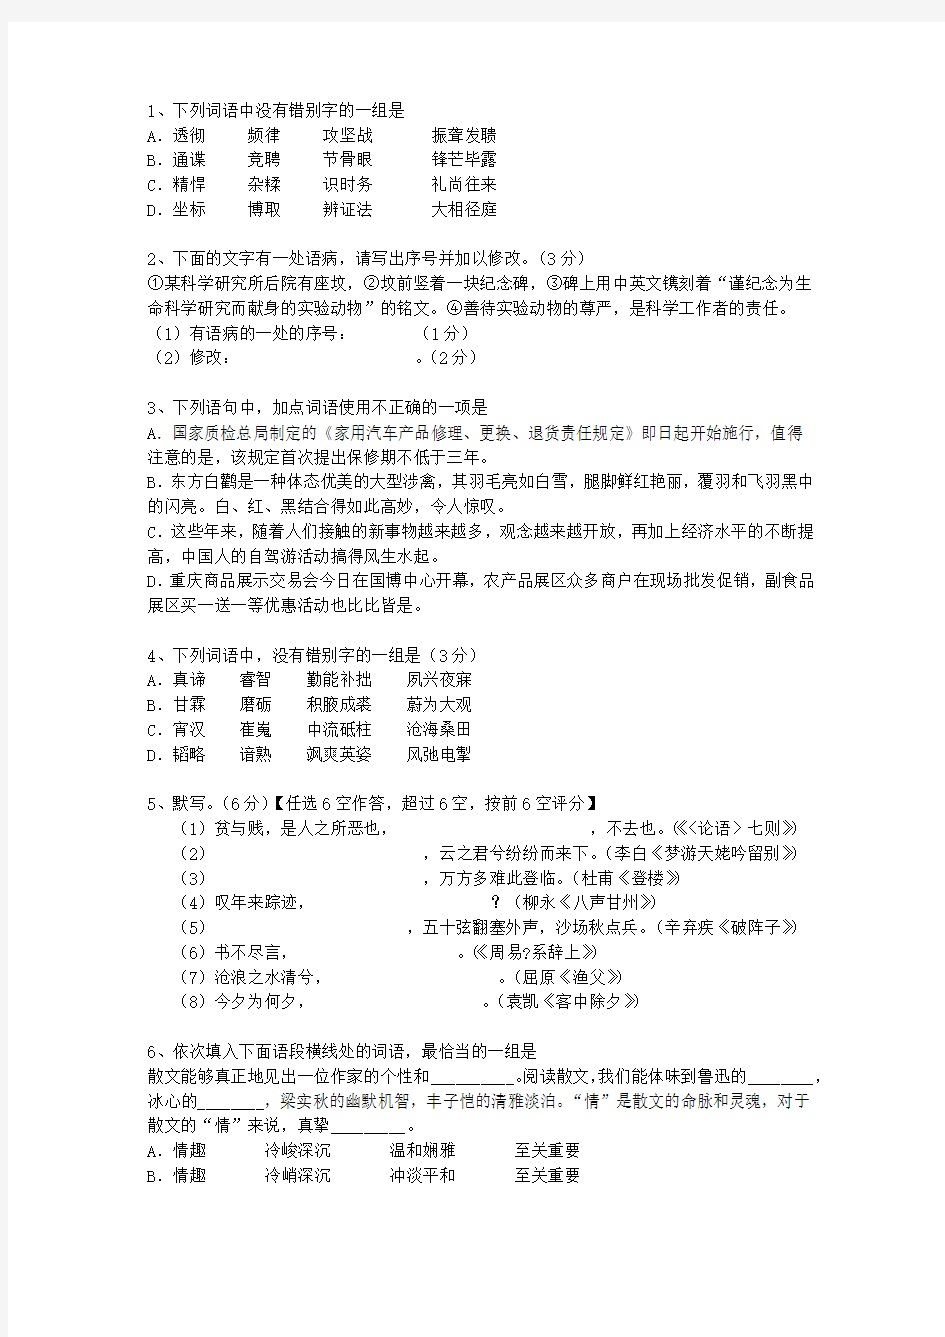 2011江西省高考语文试卷答案、考点详解以及2016预测最新考试试题库(完整版)